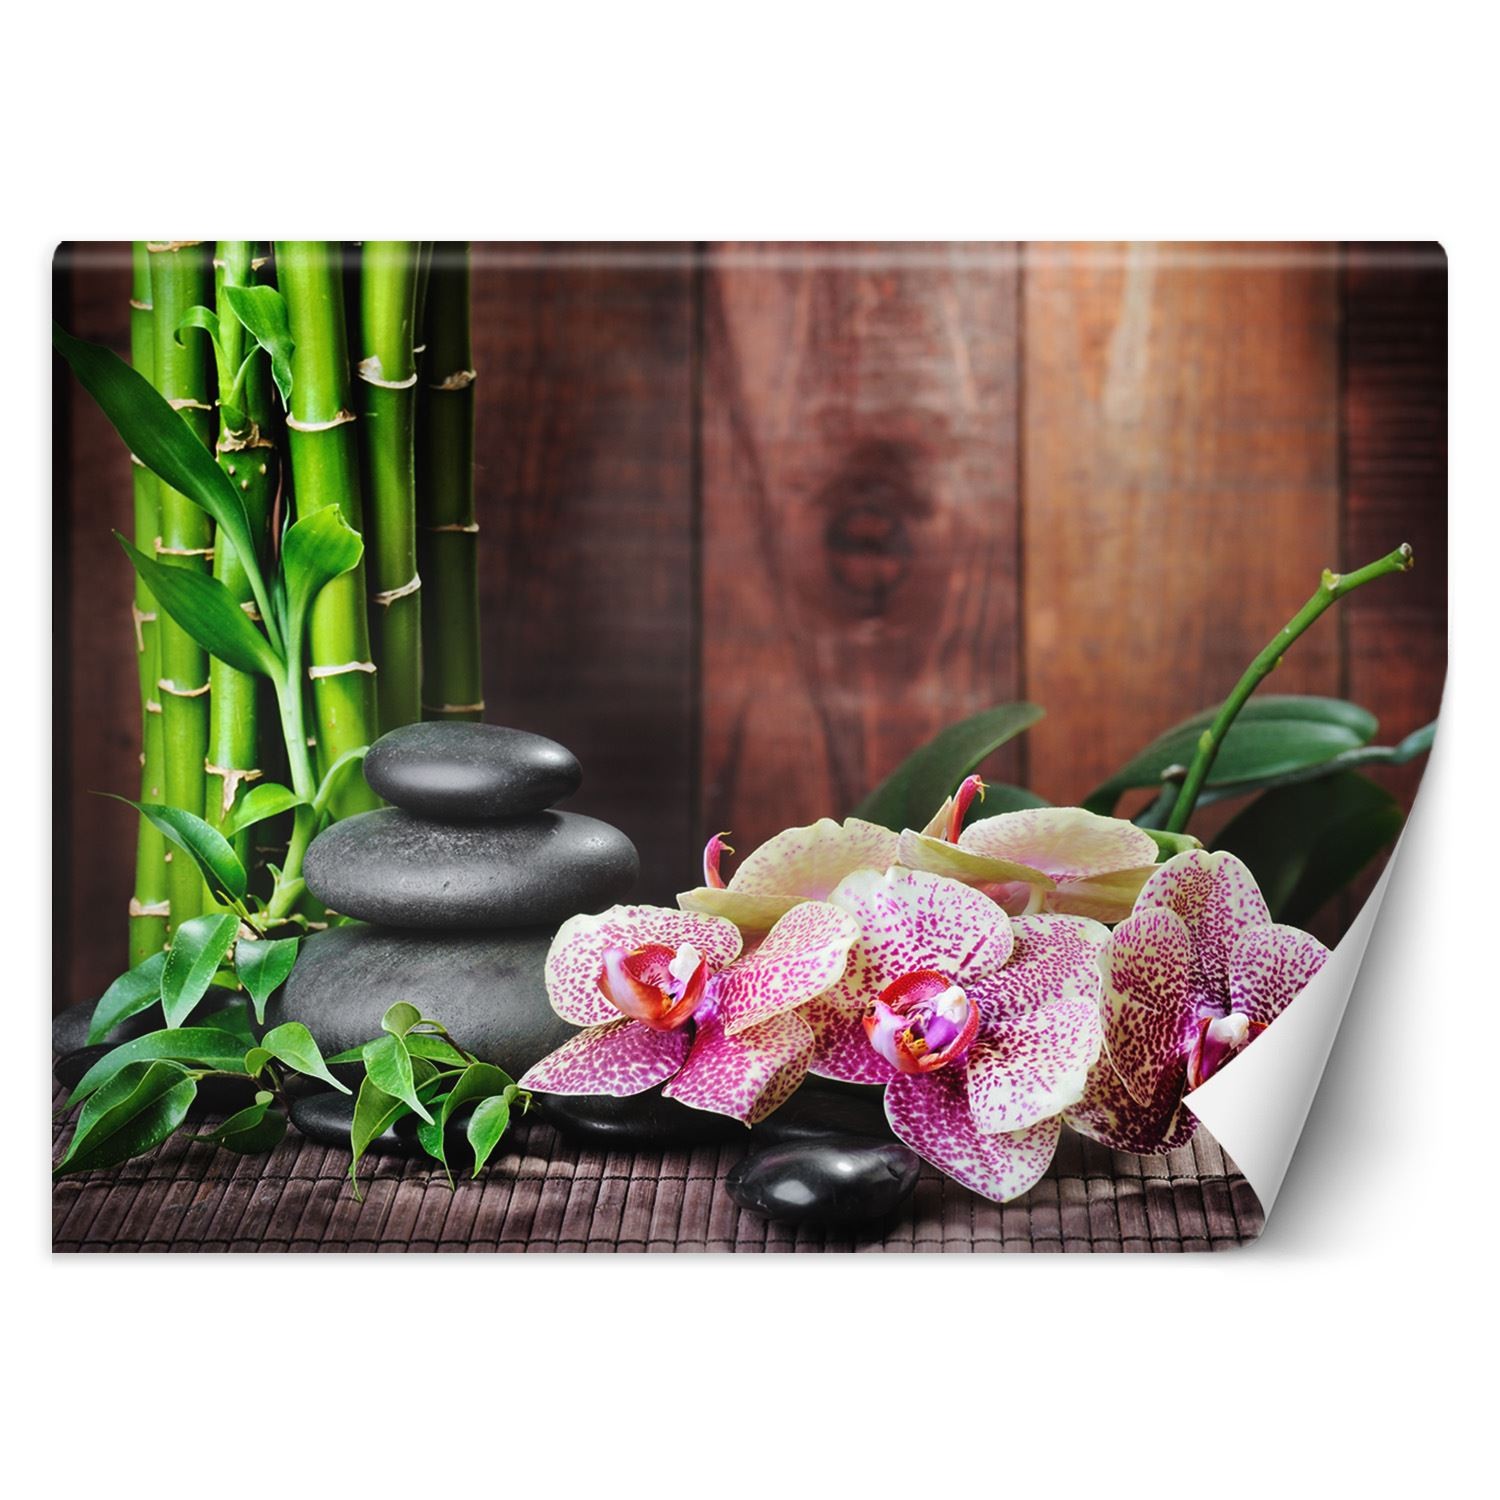 Trend24 – Behang – Orchidee Met Bamboe – Behangpapier – Fotobehang – Behang Woonkamer – 450x315x2 cm – Incl. behanglijm